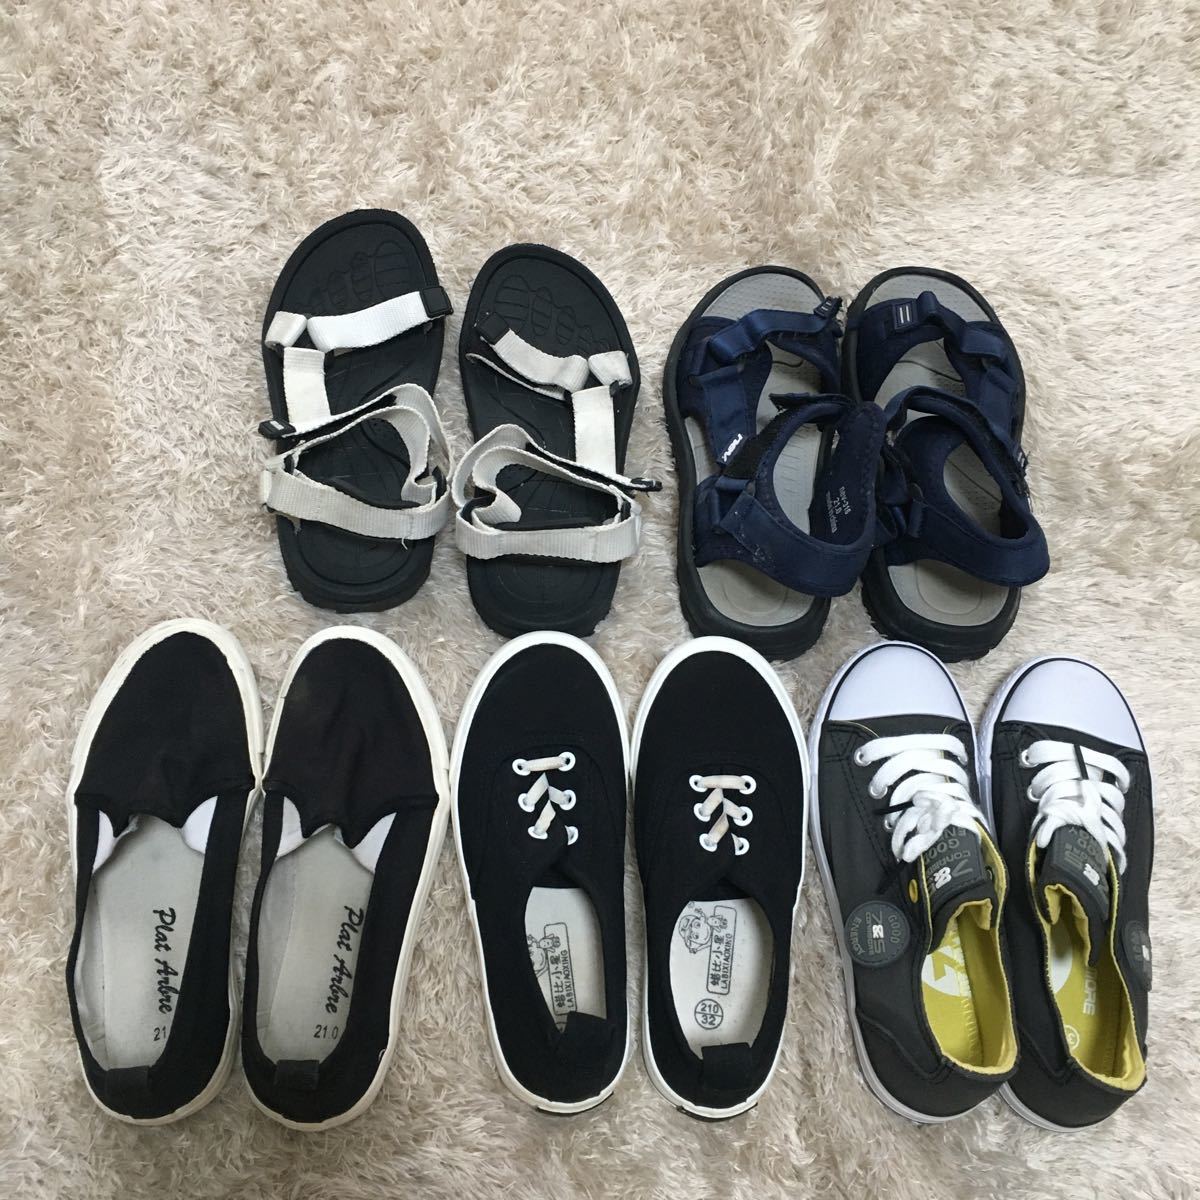 スニーカー・サンダル 5足セット 21cm 男の子靴 子供靴(シューズ一般